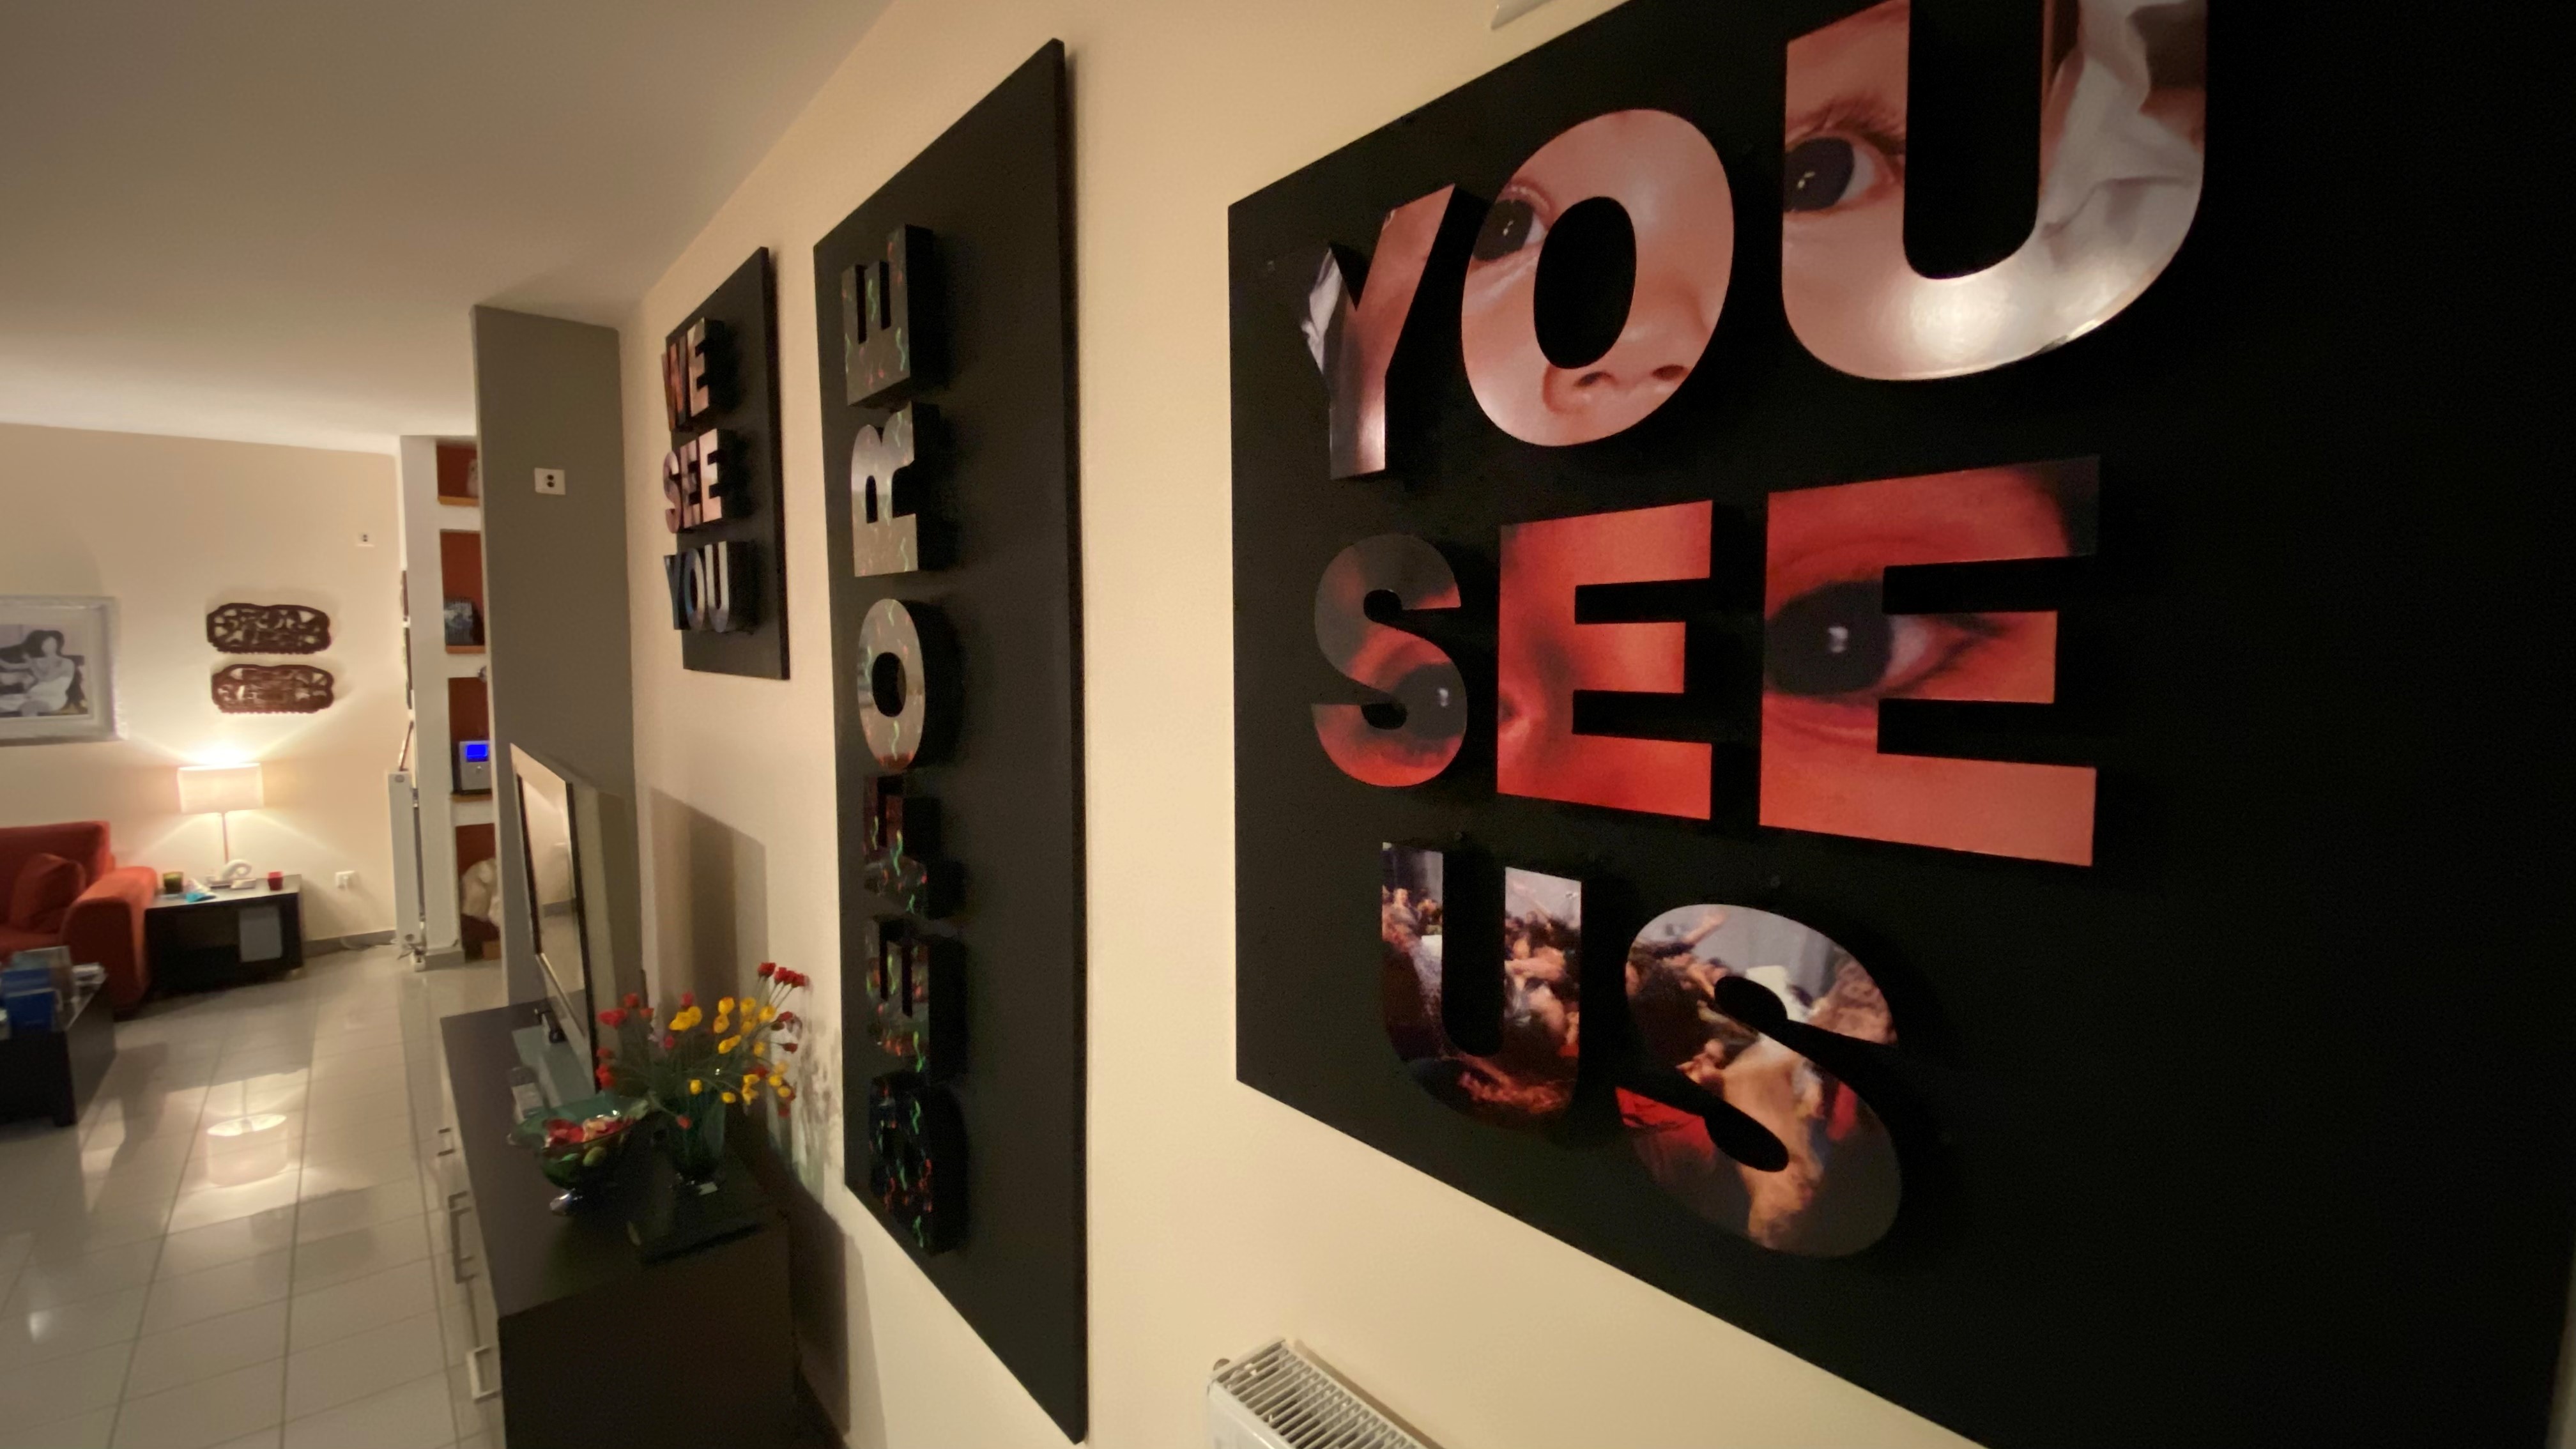 Ο τρίπτυχος πίνακας "We See You Before You See Us" της εικαστικού Σίσσυς Μουριάδου στολίζει το σαλόνι.